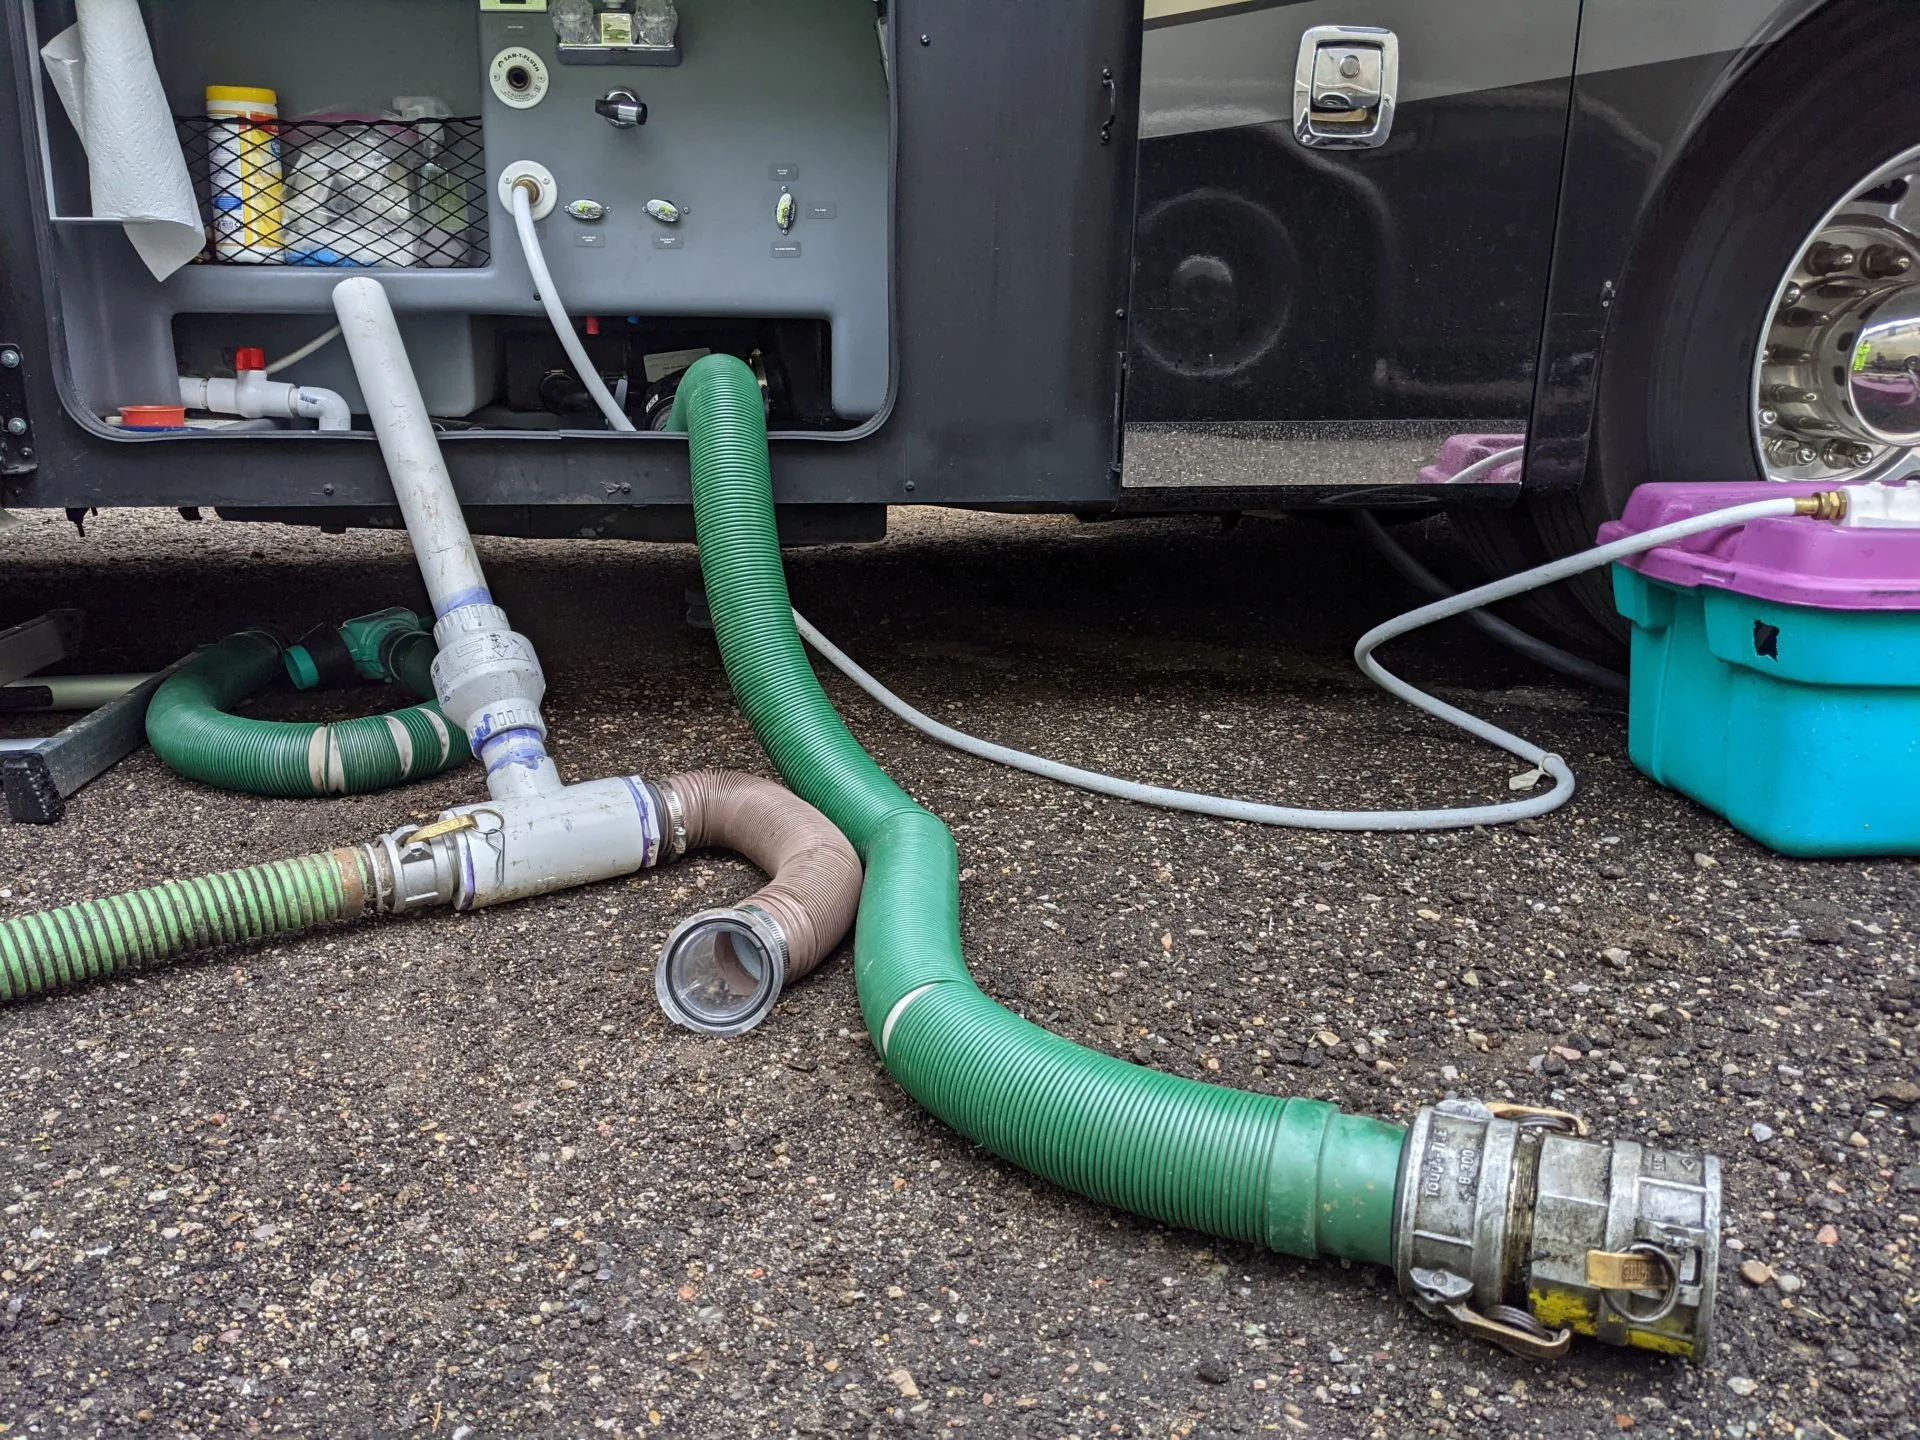 RV dump tank hoses